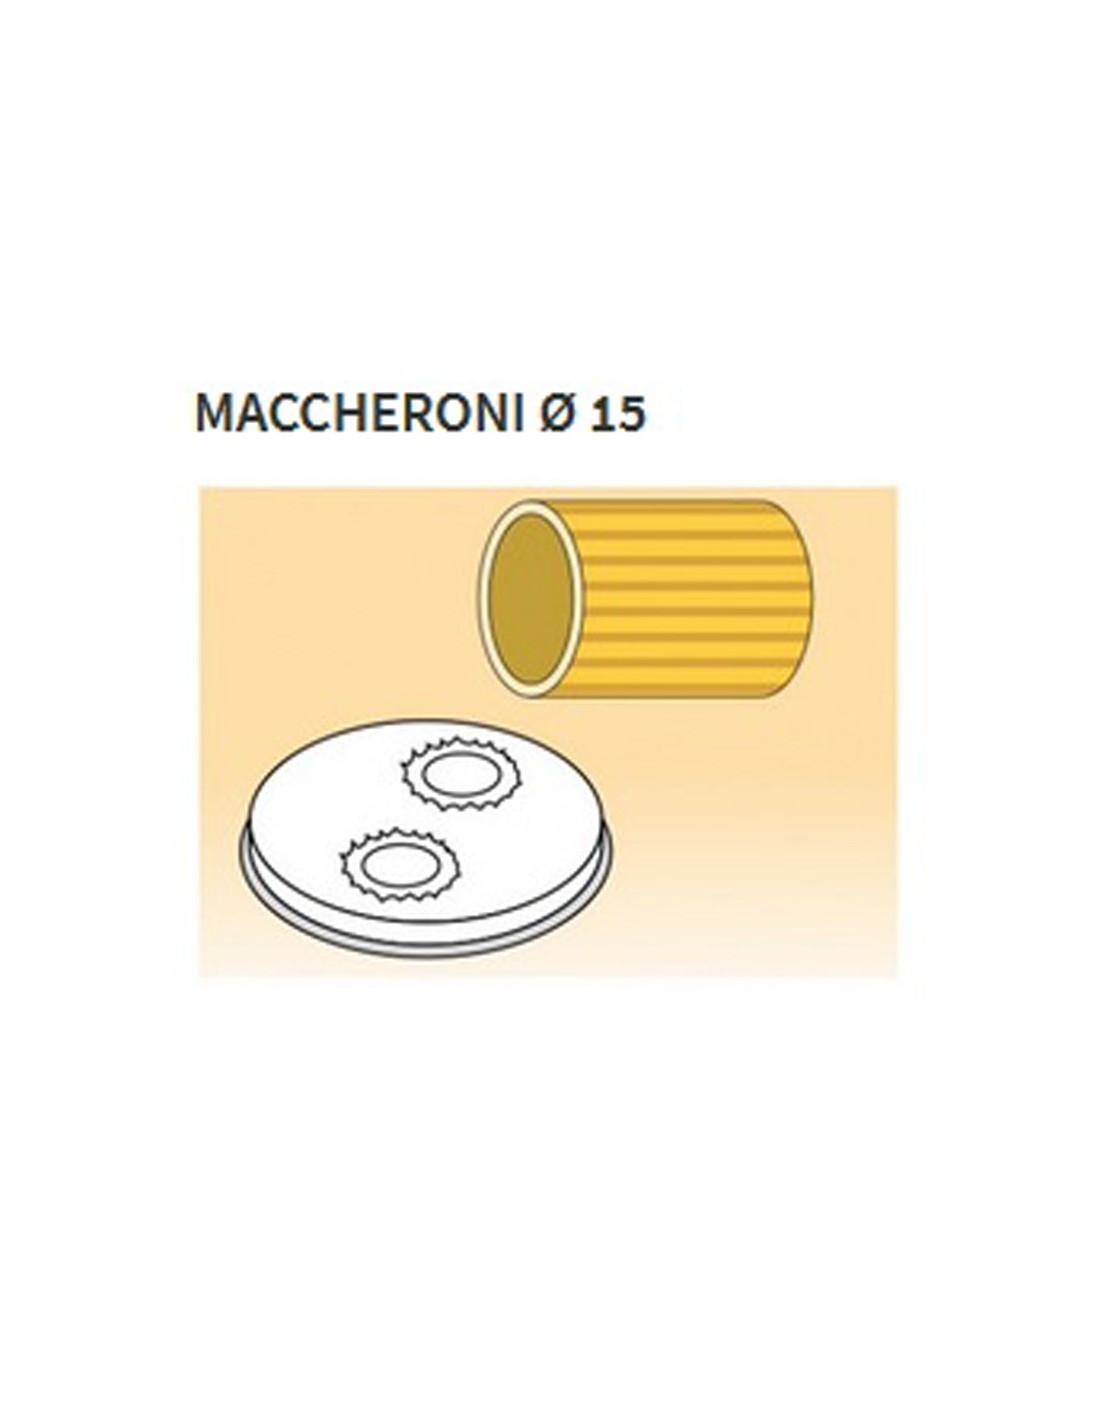 Matrices de aleación de latón de varias formas - Bronce - Para máquina de pasta fresca modelo MPF8N - Maccheroni Ø mm 15